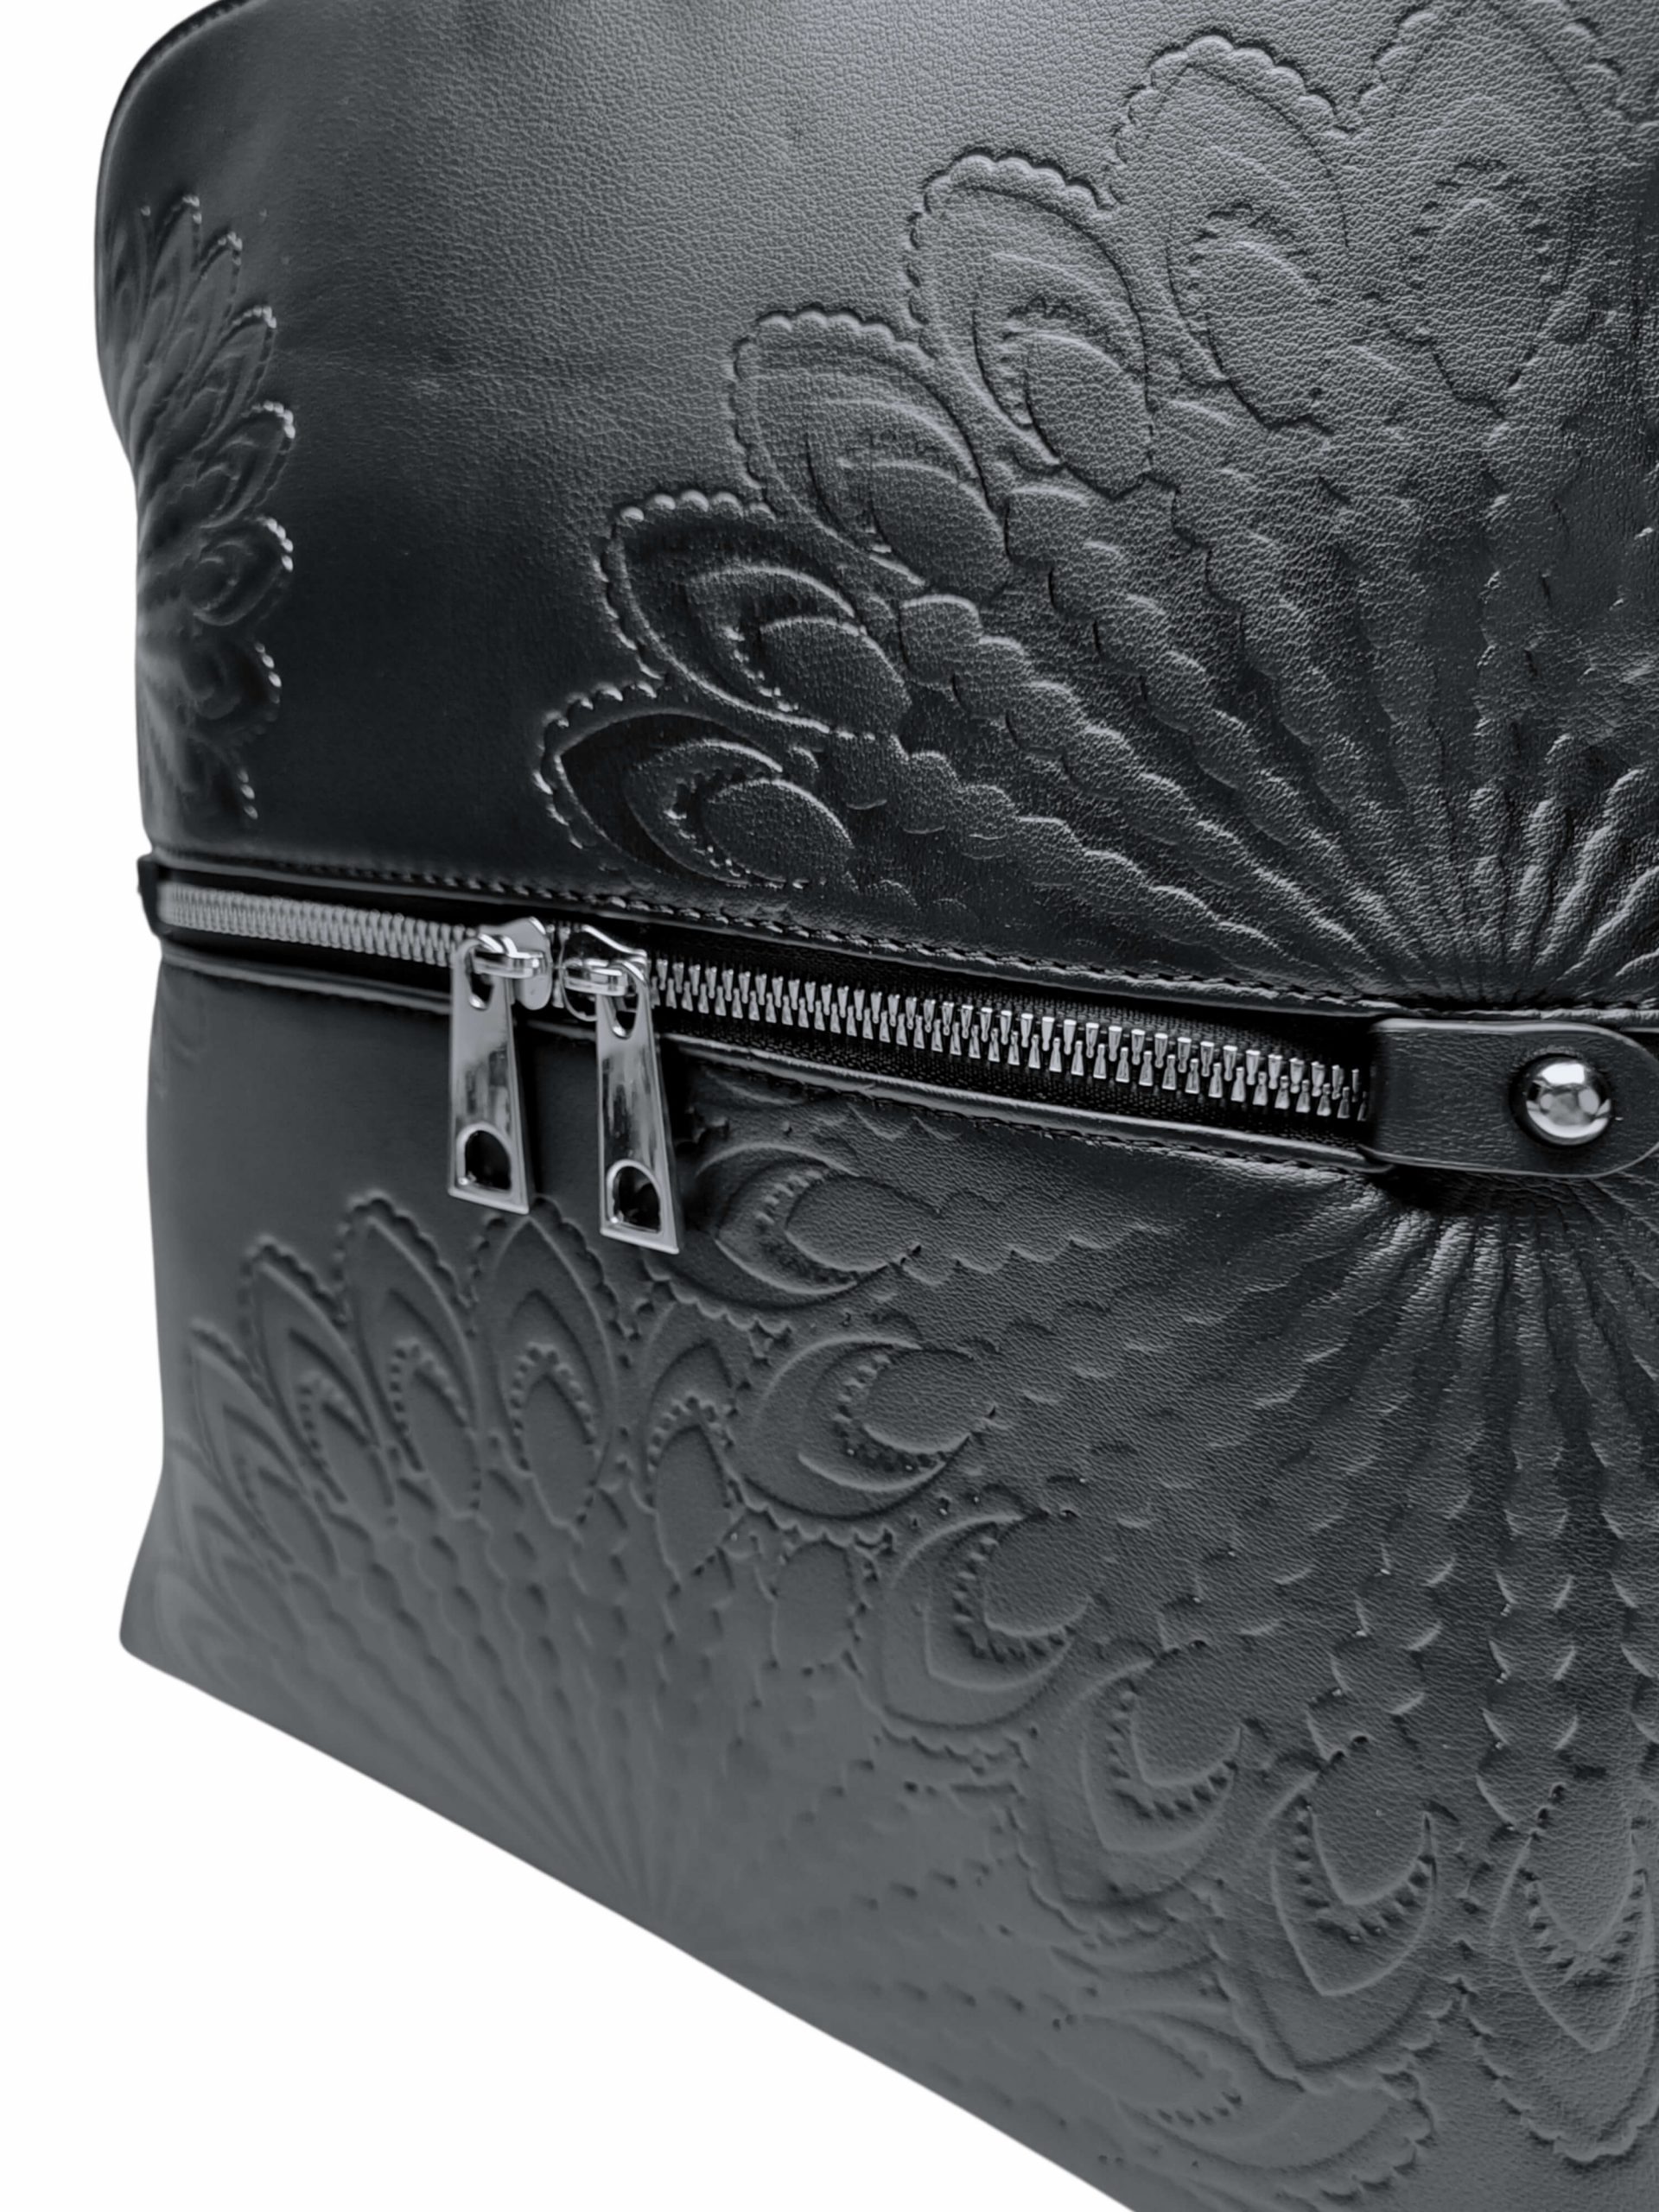 Černý dámský batoh s ornamenty, Tapple, H20820-12, detail batohu